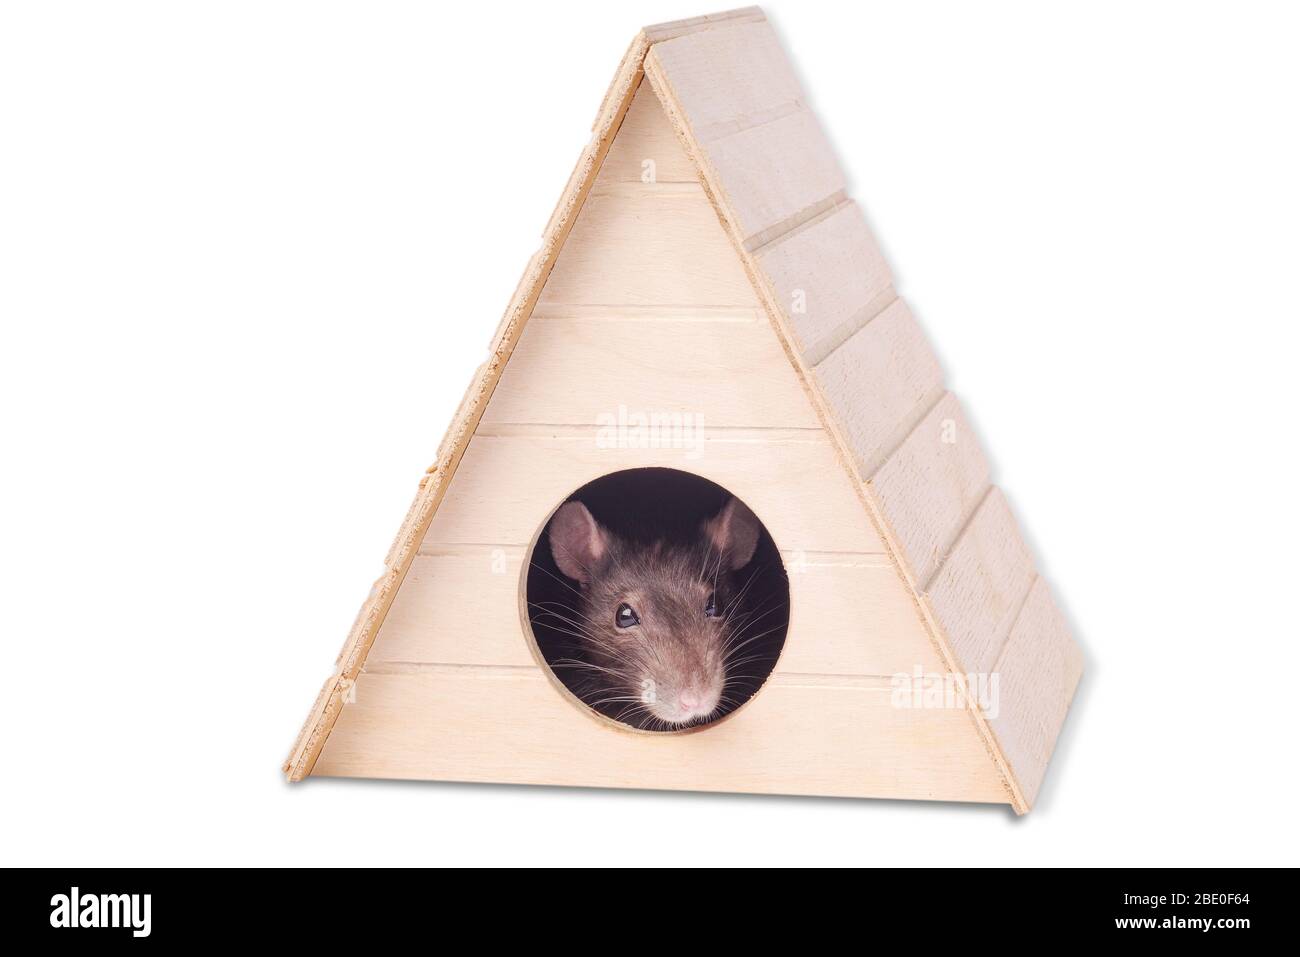 House mouse hole Banque d'images détourées - Alamy